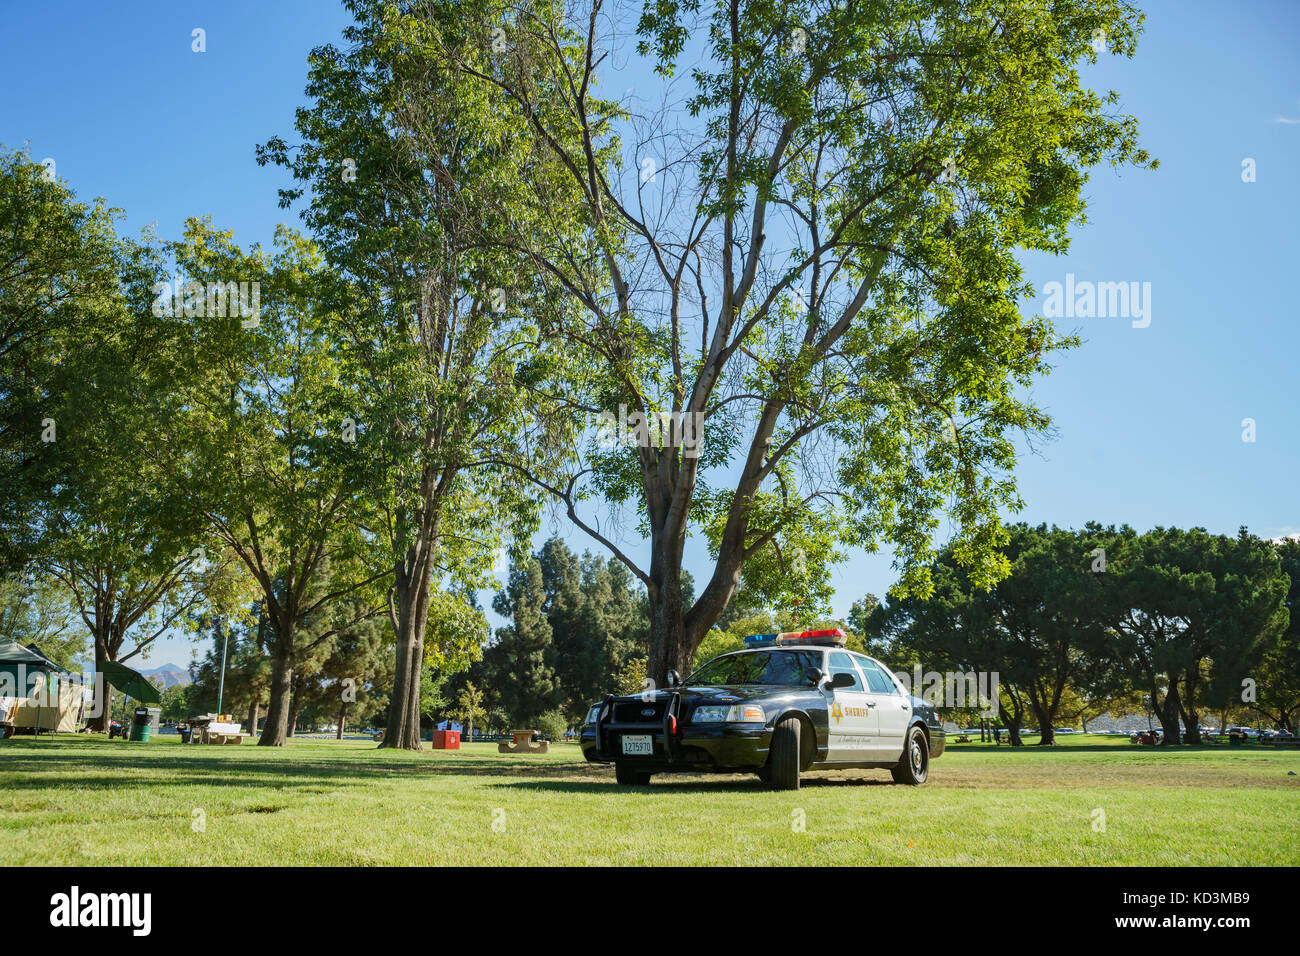 Contea di Los Angeles, Ott 7: auto della polizia e campeggio il Ott 7, 2017 a santa fe dam Recreation Area, nella contea di Los Angeles, california, Stati Uniti Foto Stock